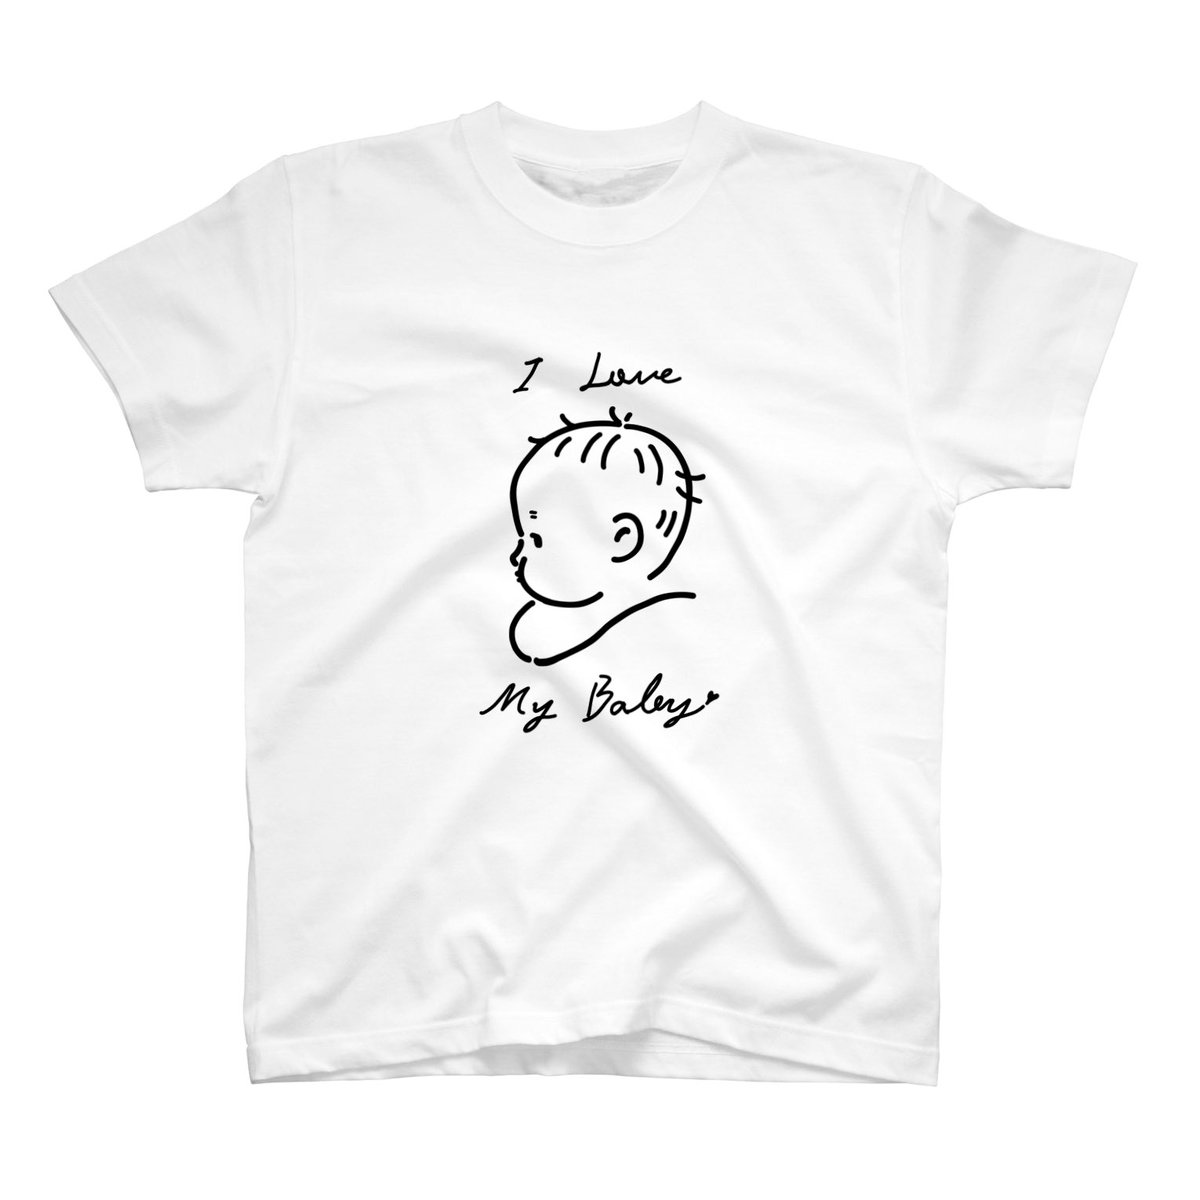 suzuriのTシャツ1000円引きセールやってるみたいです〜🎉
しれっと親バカアピールできるTシャツいかがですか?

https://t.co/6lMB8RylfC

#suzuri #SUZURIのTシャツセール 